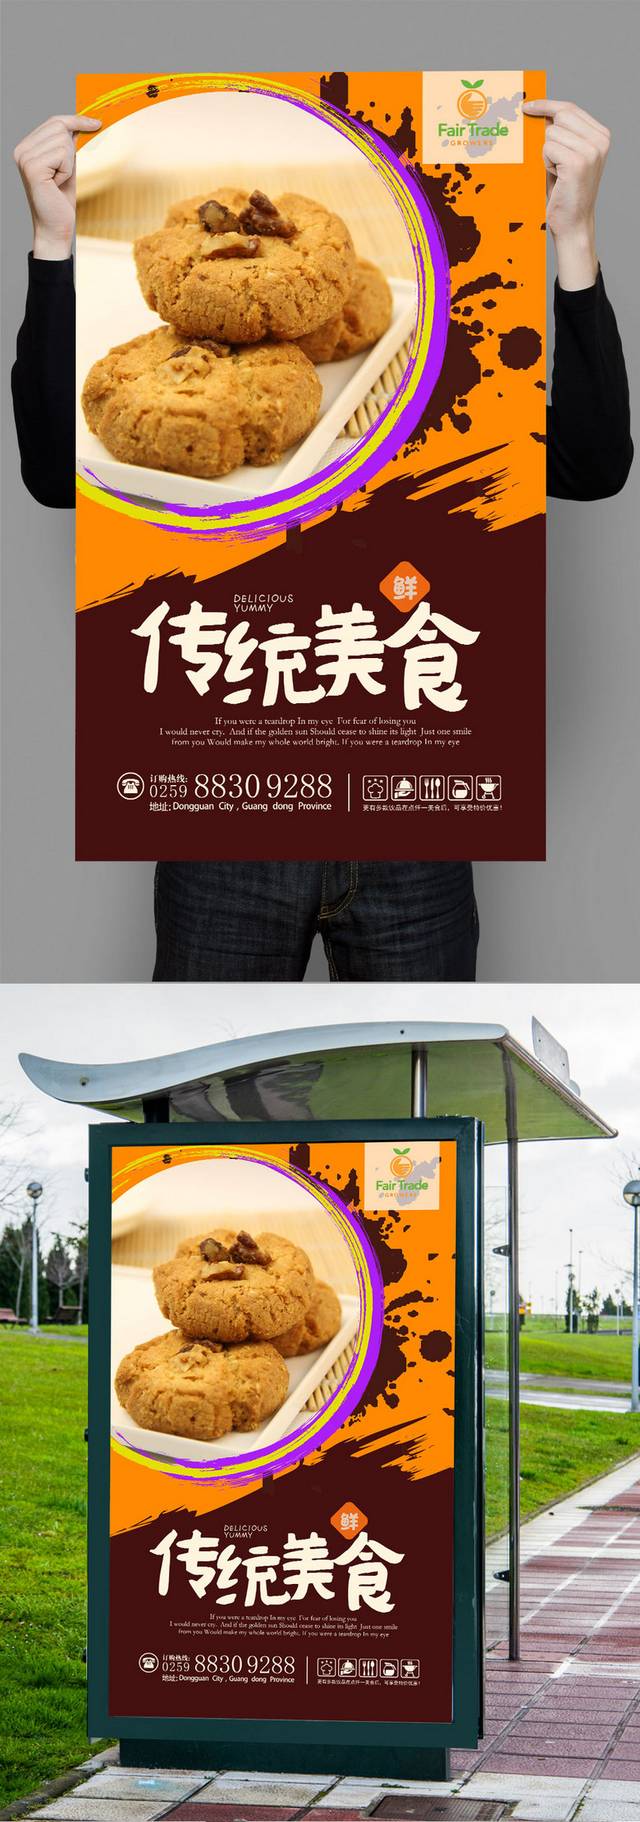 桃酥零食促销宣传海报设计